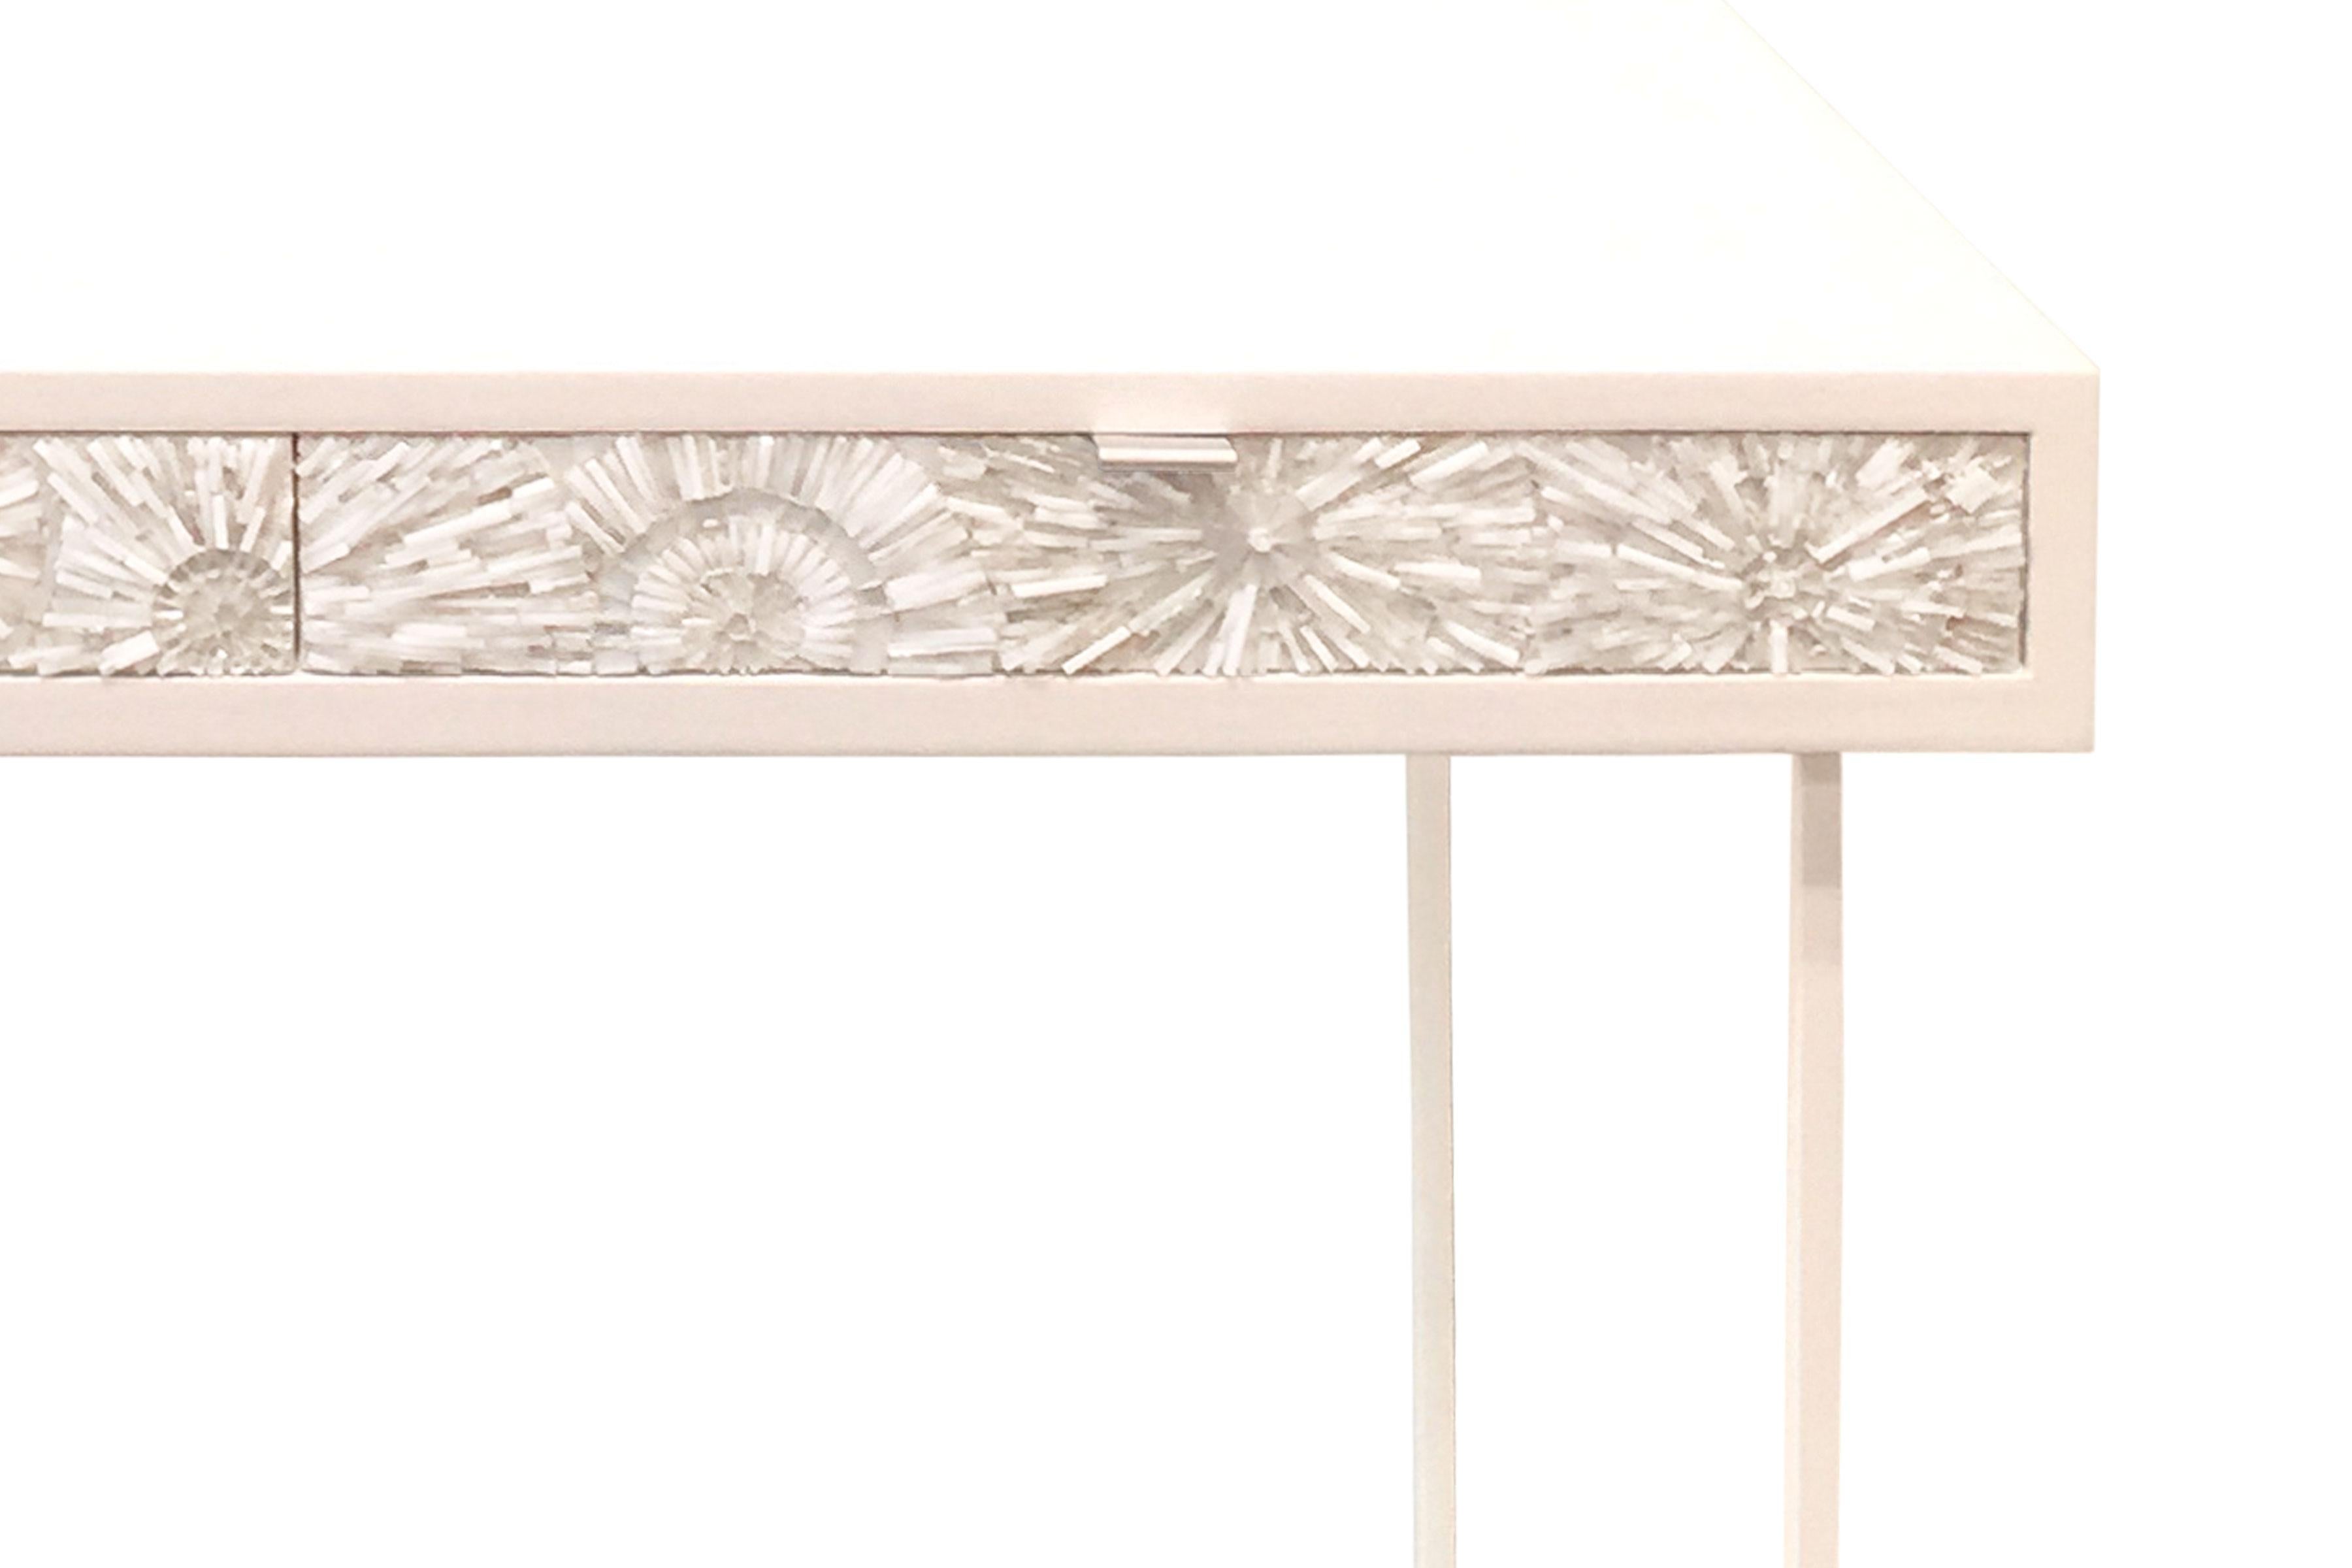 Le bureau/lavabo Pavia Blossom d'Ercole Home comporte 2 tiroirs, avec une finition en bois peint blanc sur chêne.
Des mosaïques de verre blanc et argenté taillées à la main décorent les façades des tiroirs en motif blossom (fleurs en trois